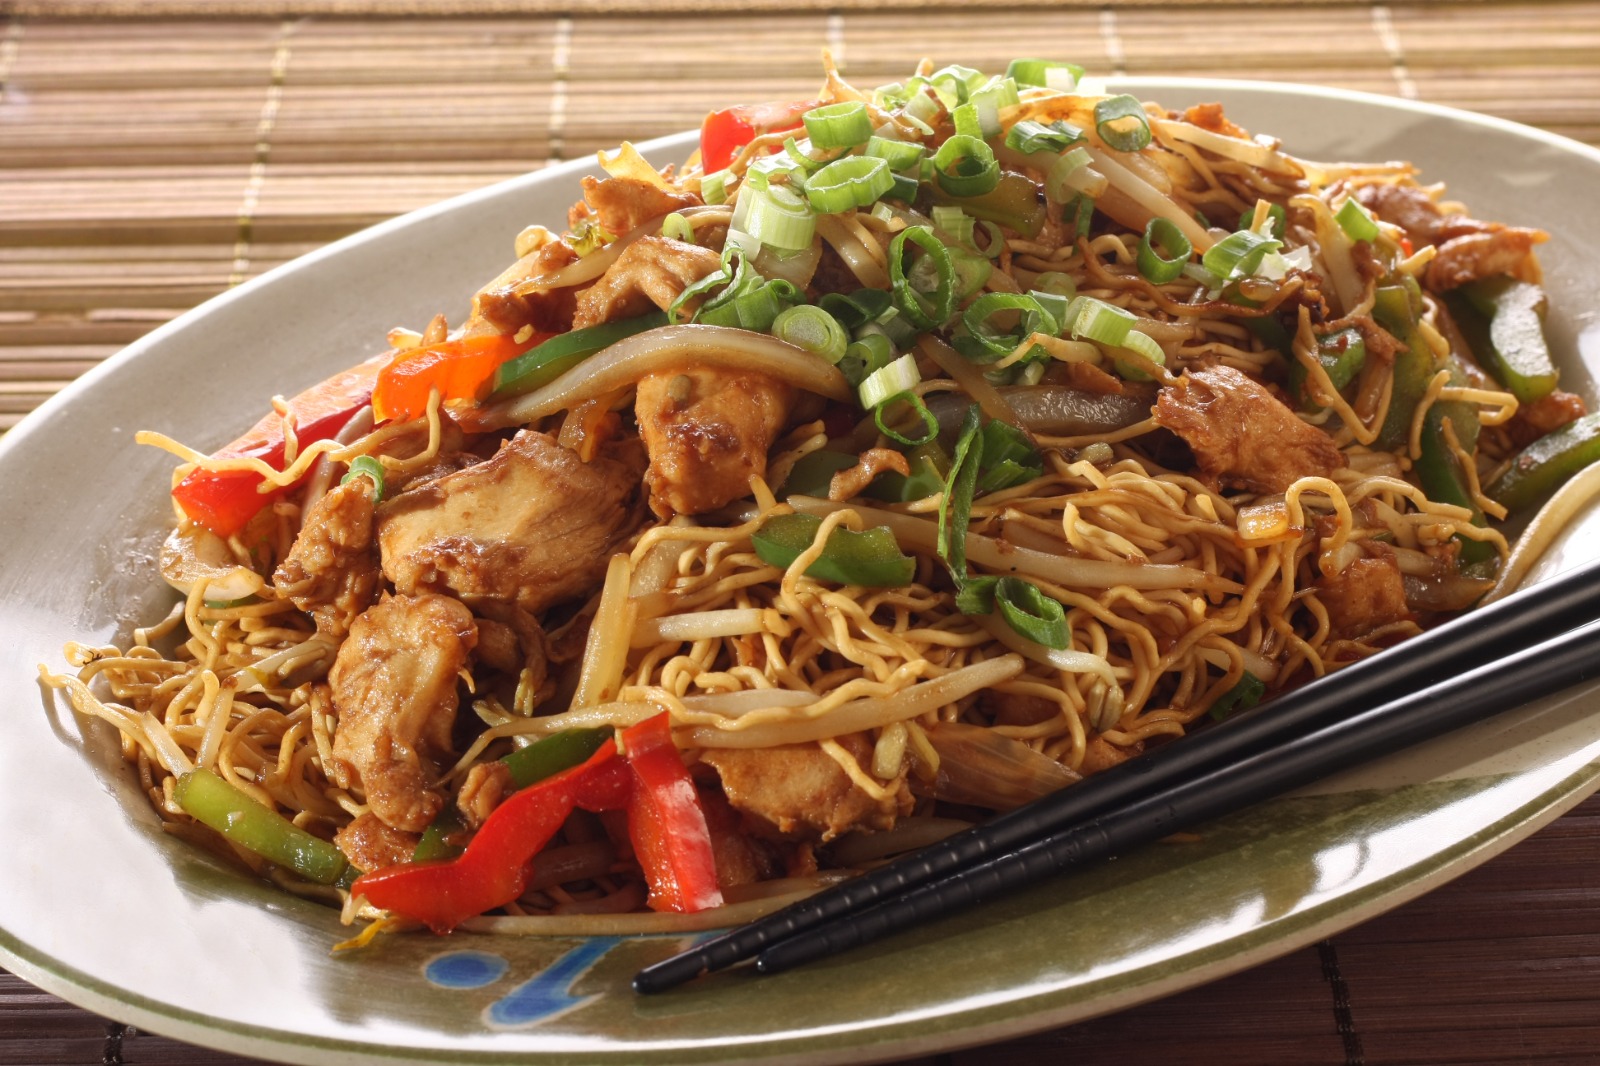 El chao mein es una adaptación culinaria que data del siglo XX, elaborada por chinos que vivían en Estados Unidos y que posteriormente migró a distintas partes del mundo. (Foto Prensa Libre: Shutterstock)